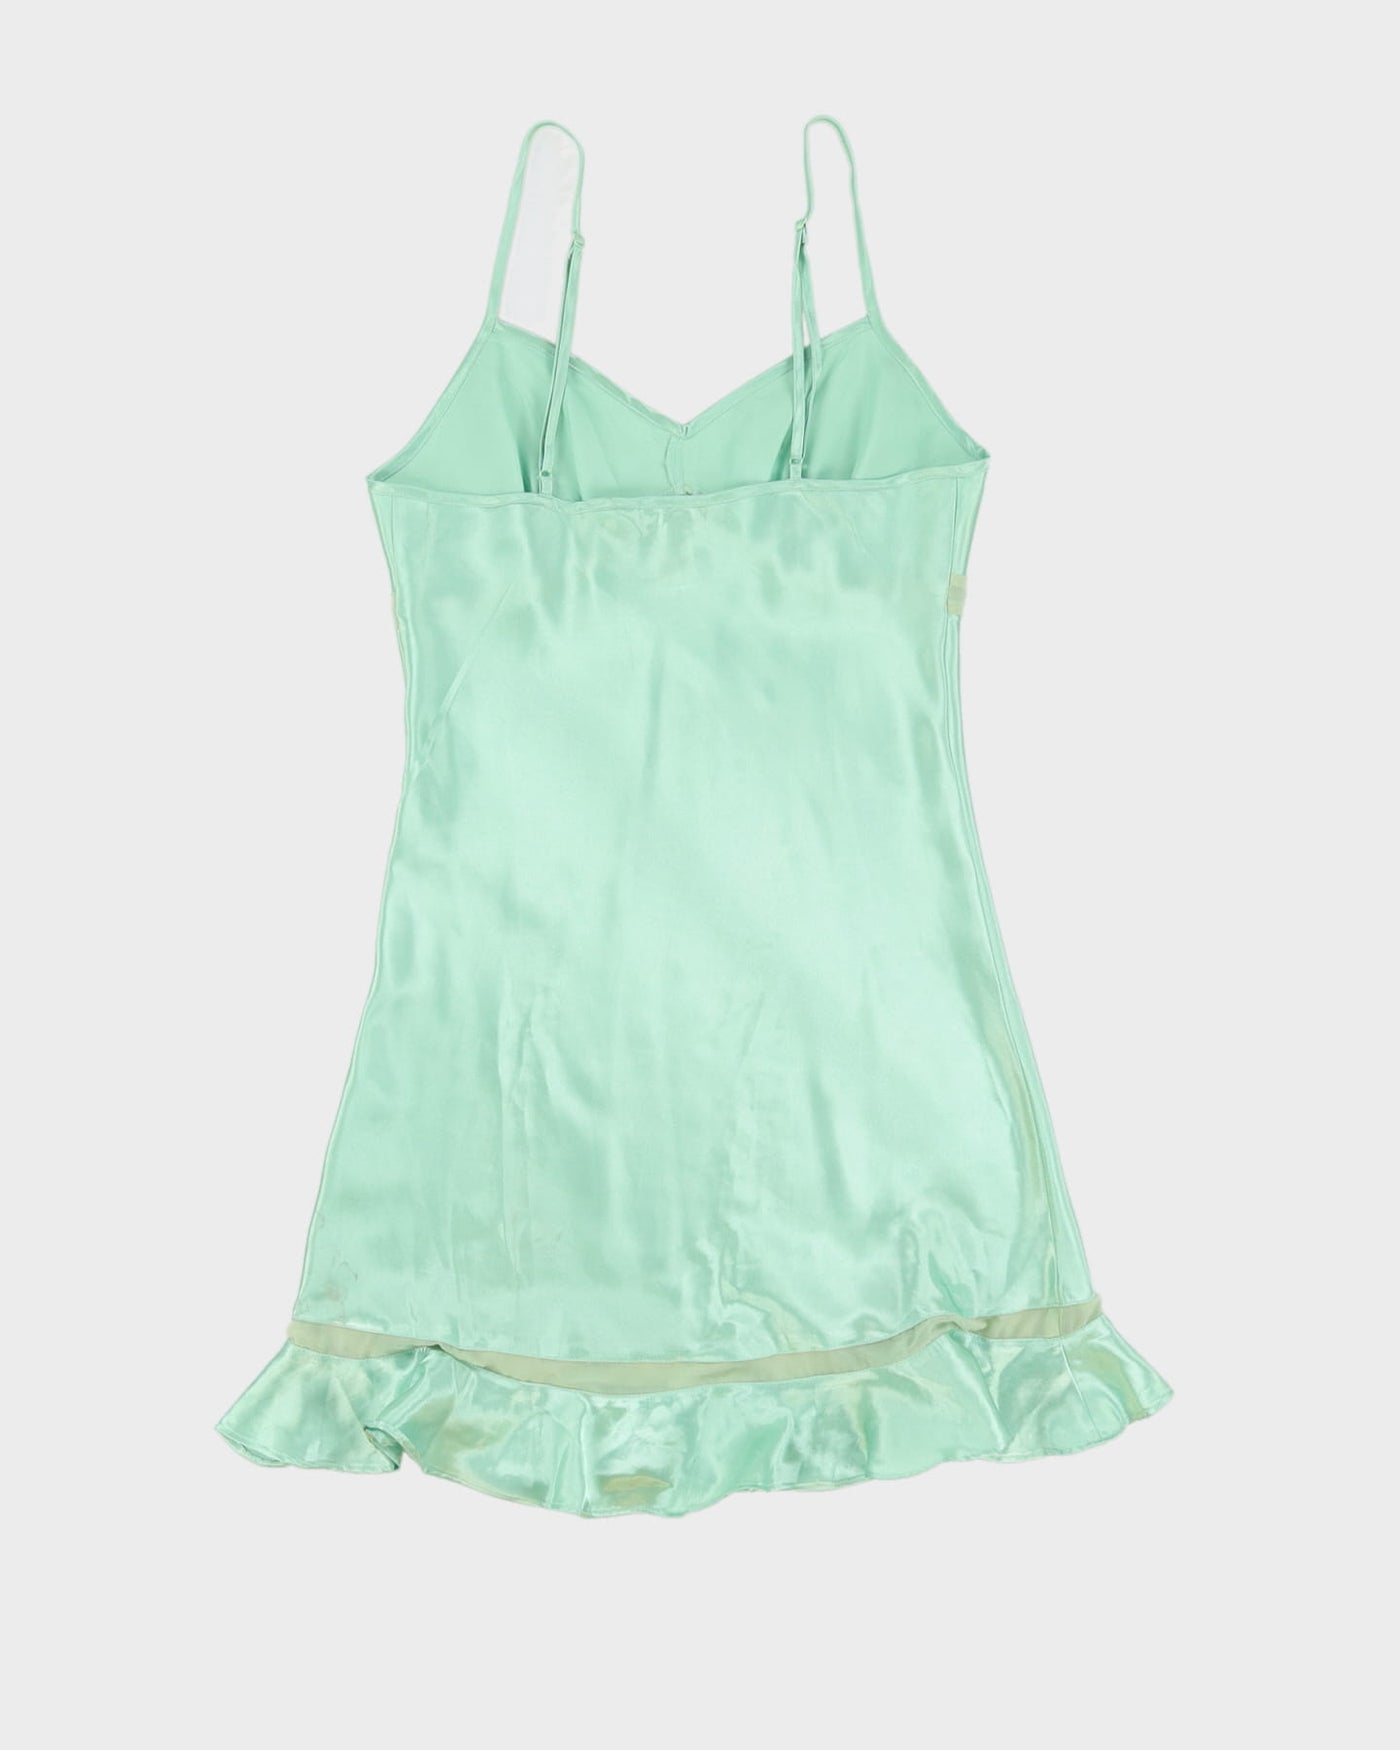 Y2K Mint Green Slip Dress - S